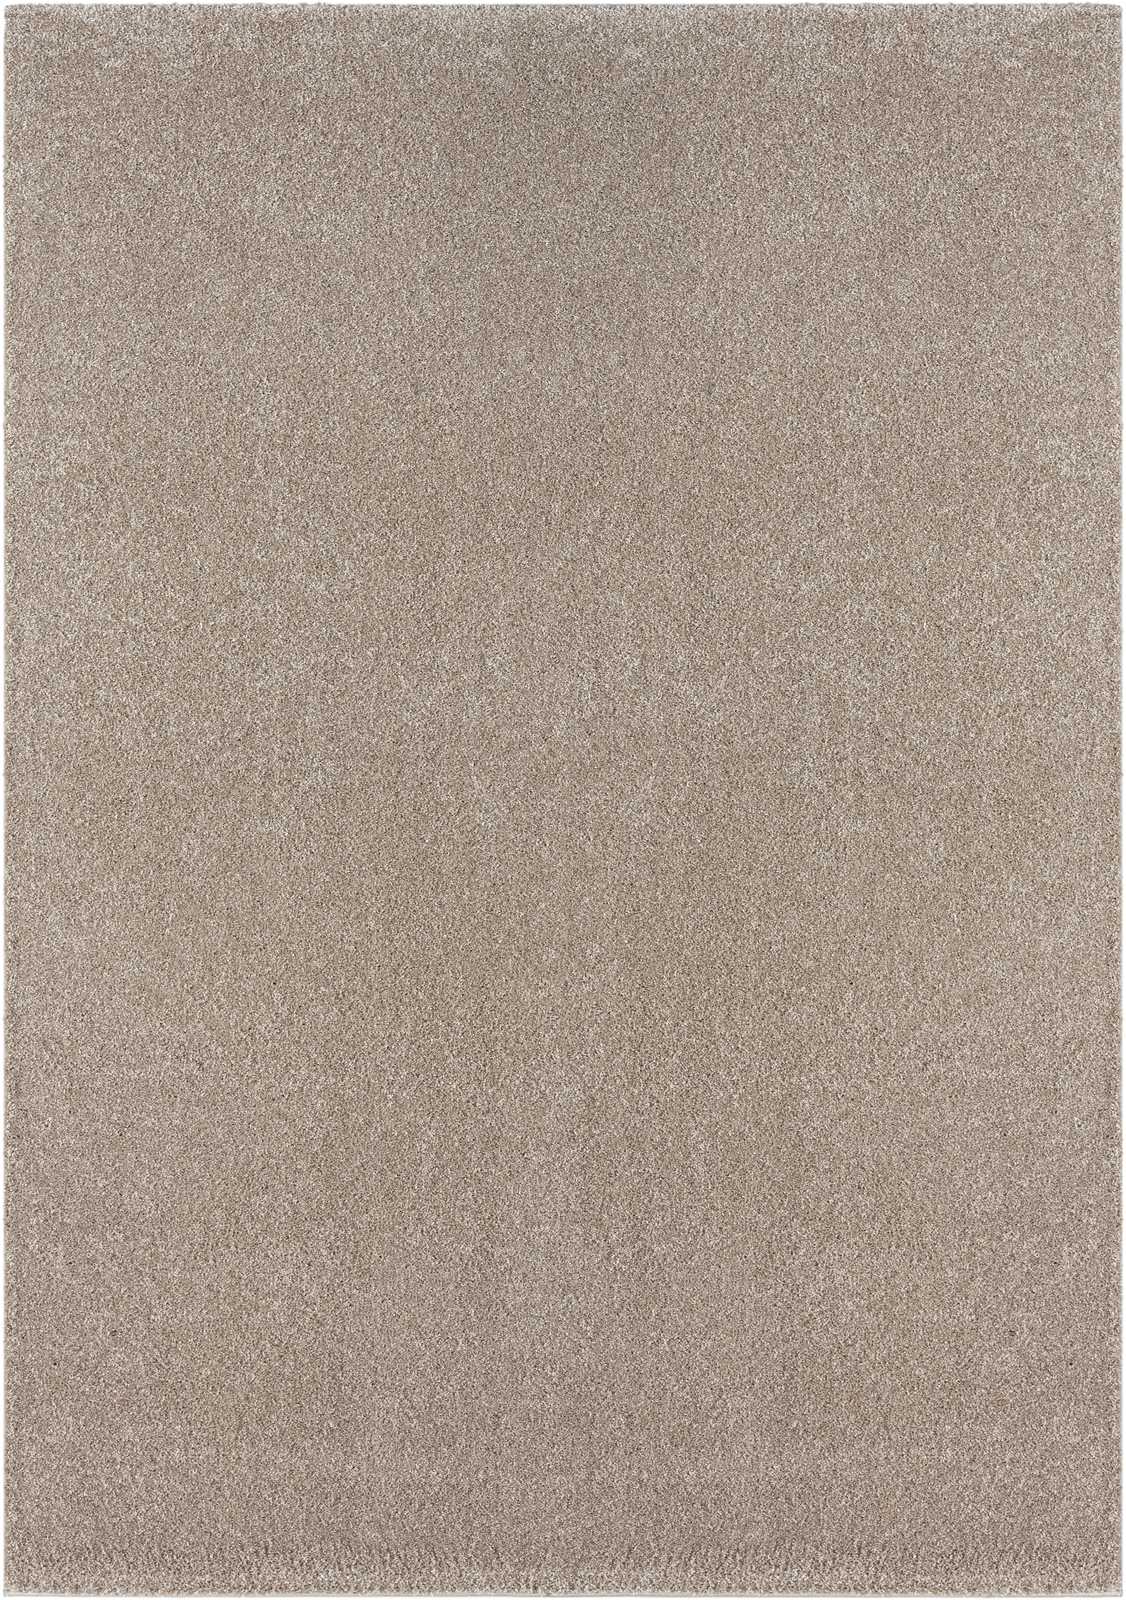             Sanfter Kurzflor Teppich in Beige – 230 x 160 cm
        